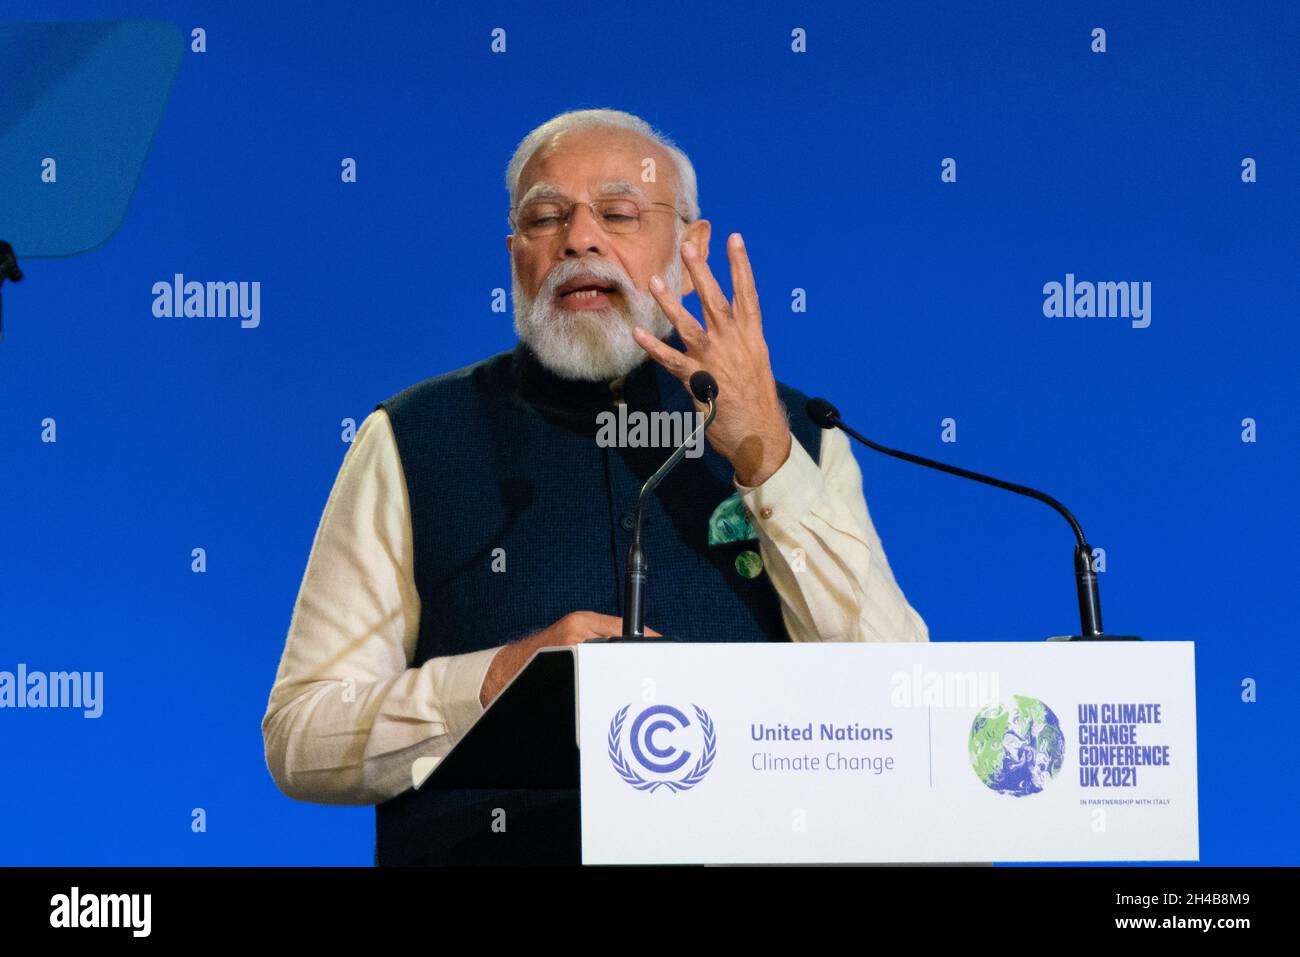 Glasgow, Schottland, Großbritannien. November 2021. Narendra Modi, der Premierminister von Indien, gibt nationale Erklärung vor der UN-Klimakonferenz COP26 in Glasgow ab. Iain Masterton/Alamy Live News. Stockfoto